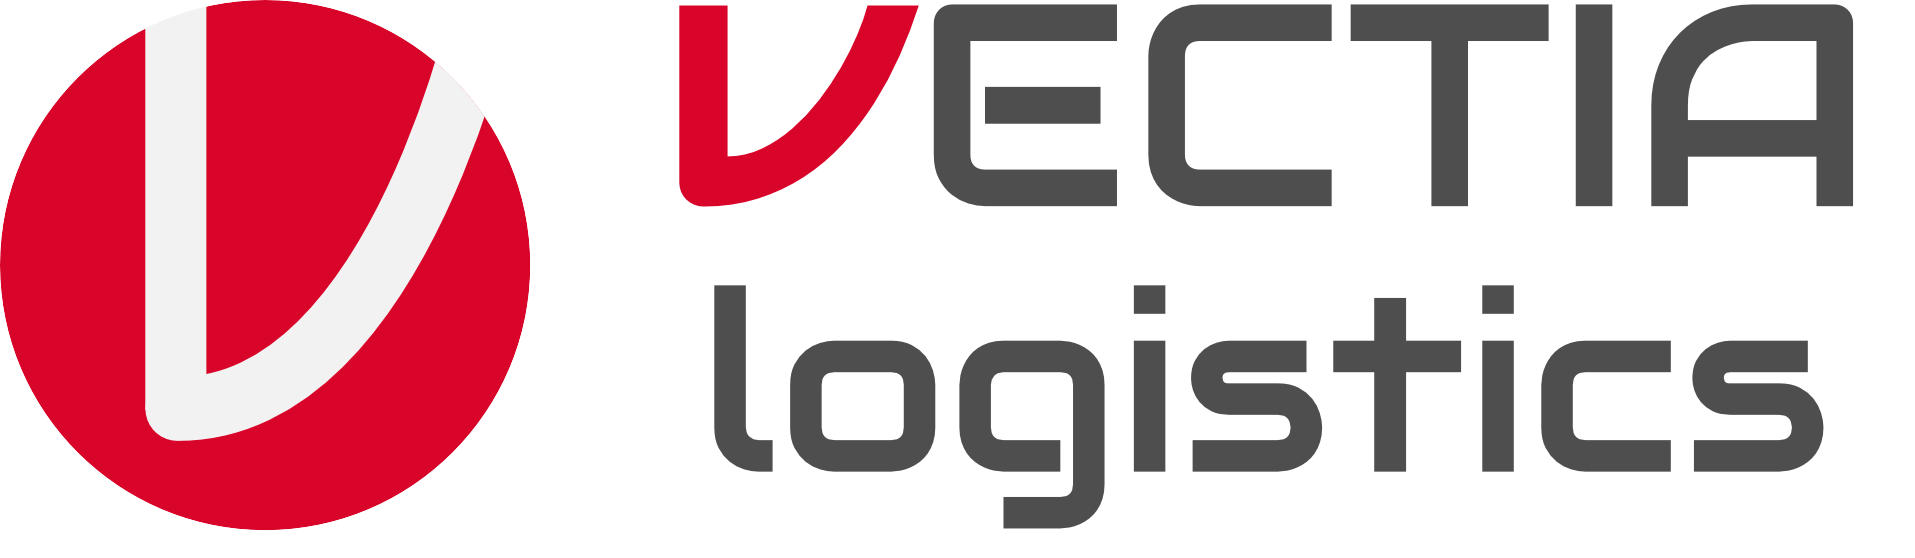 Vectia Logistics S.L.